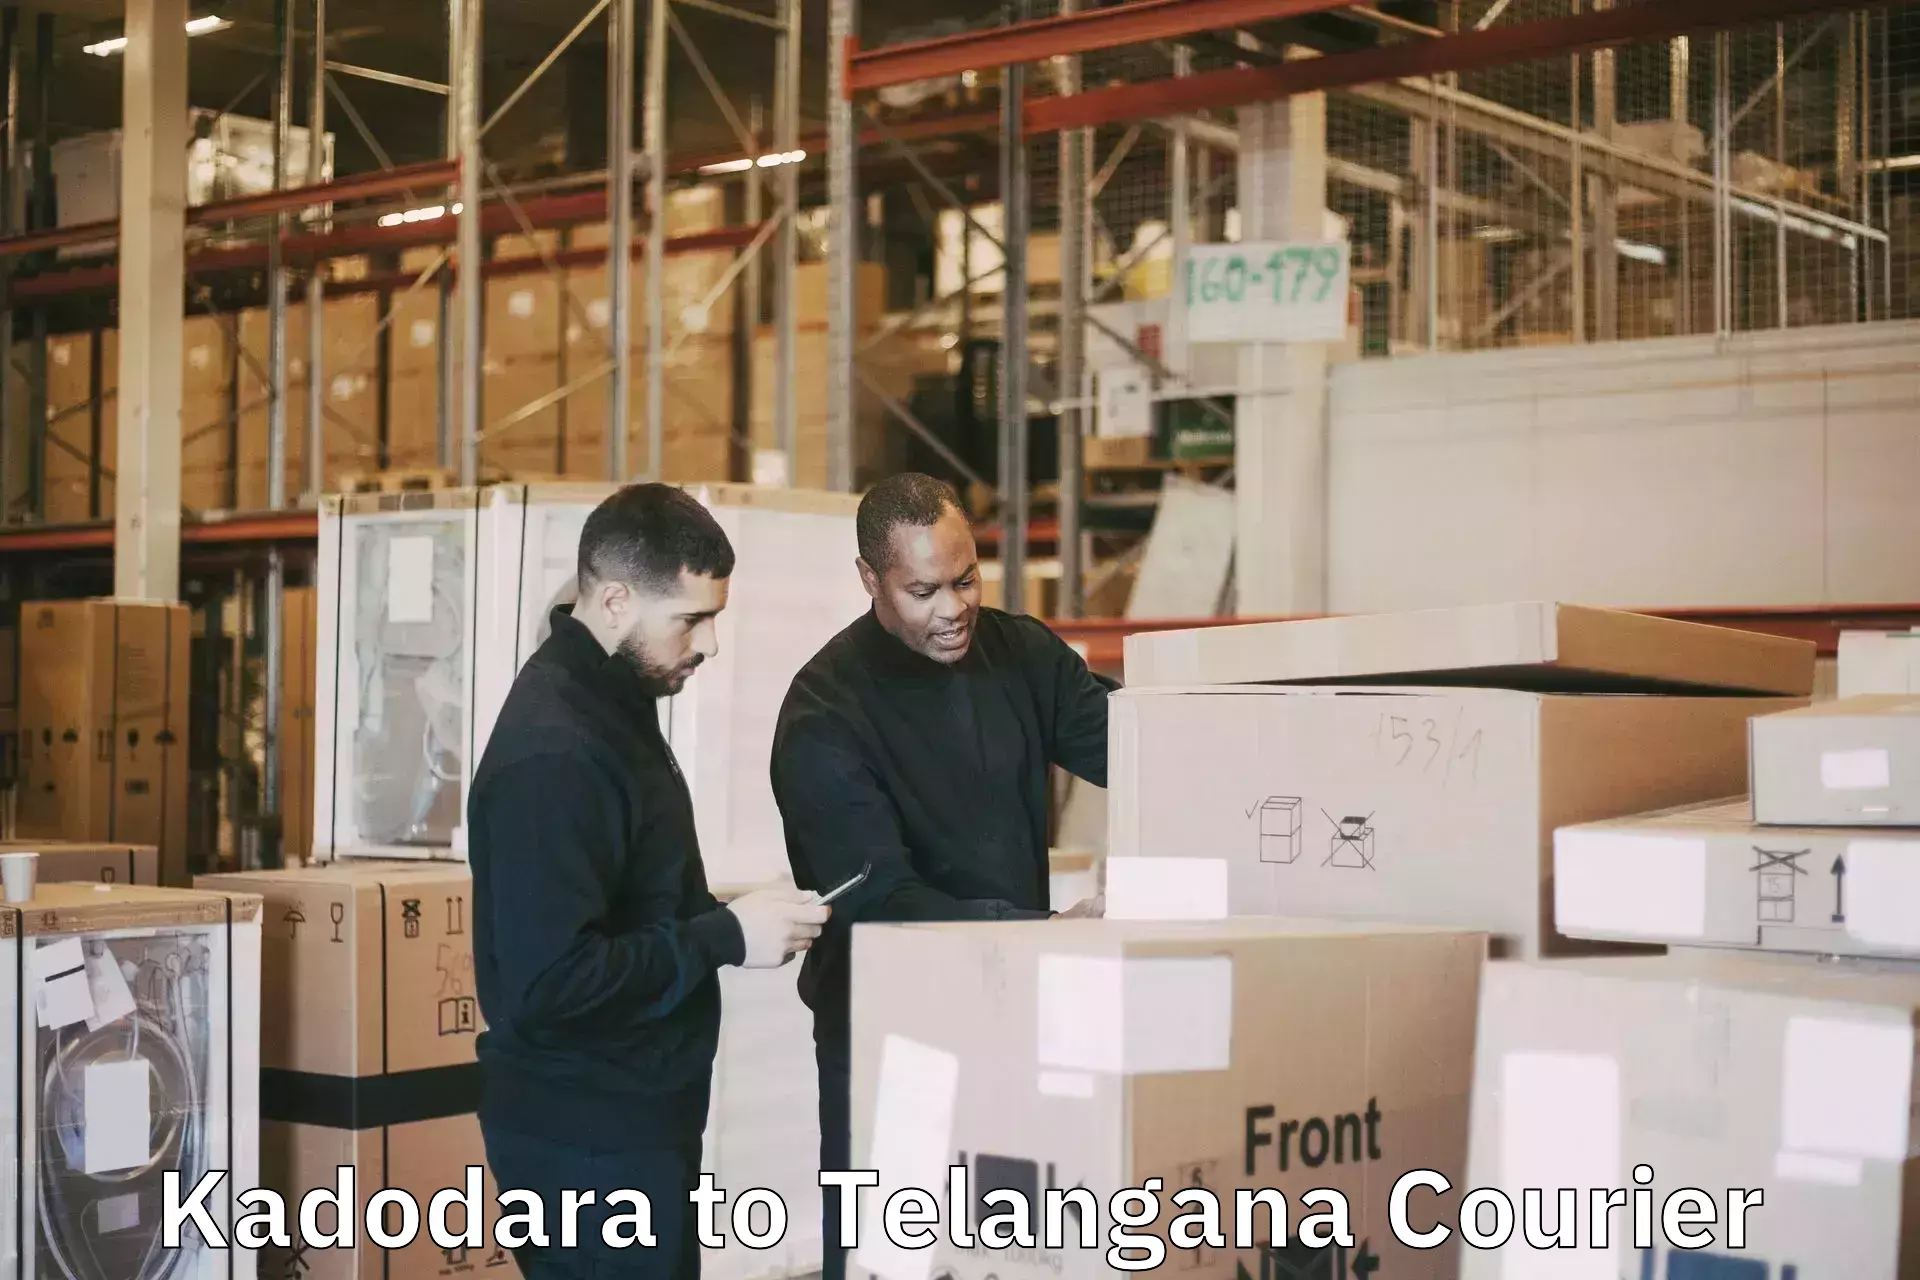 Luggage delivery network Kadodara to Patancheru